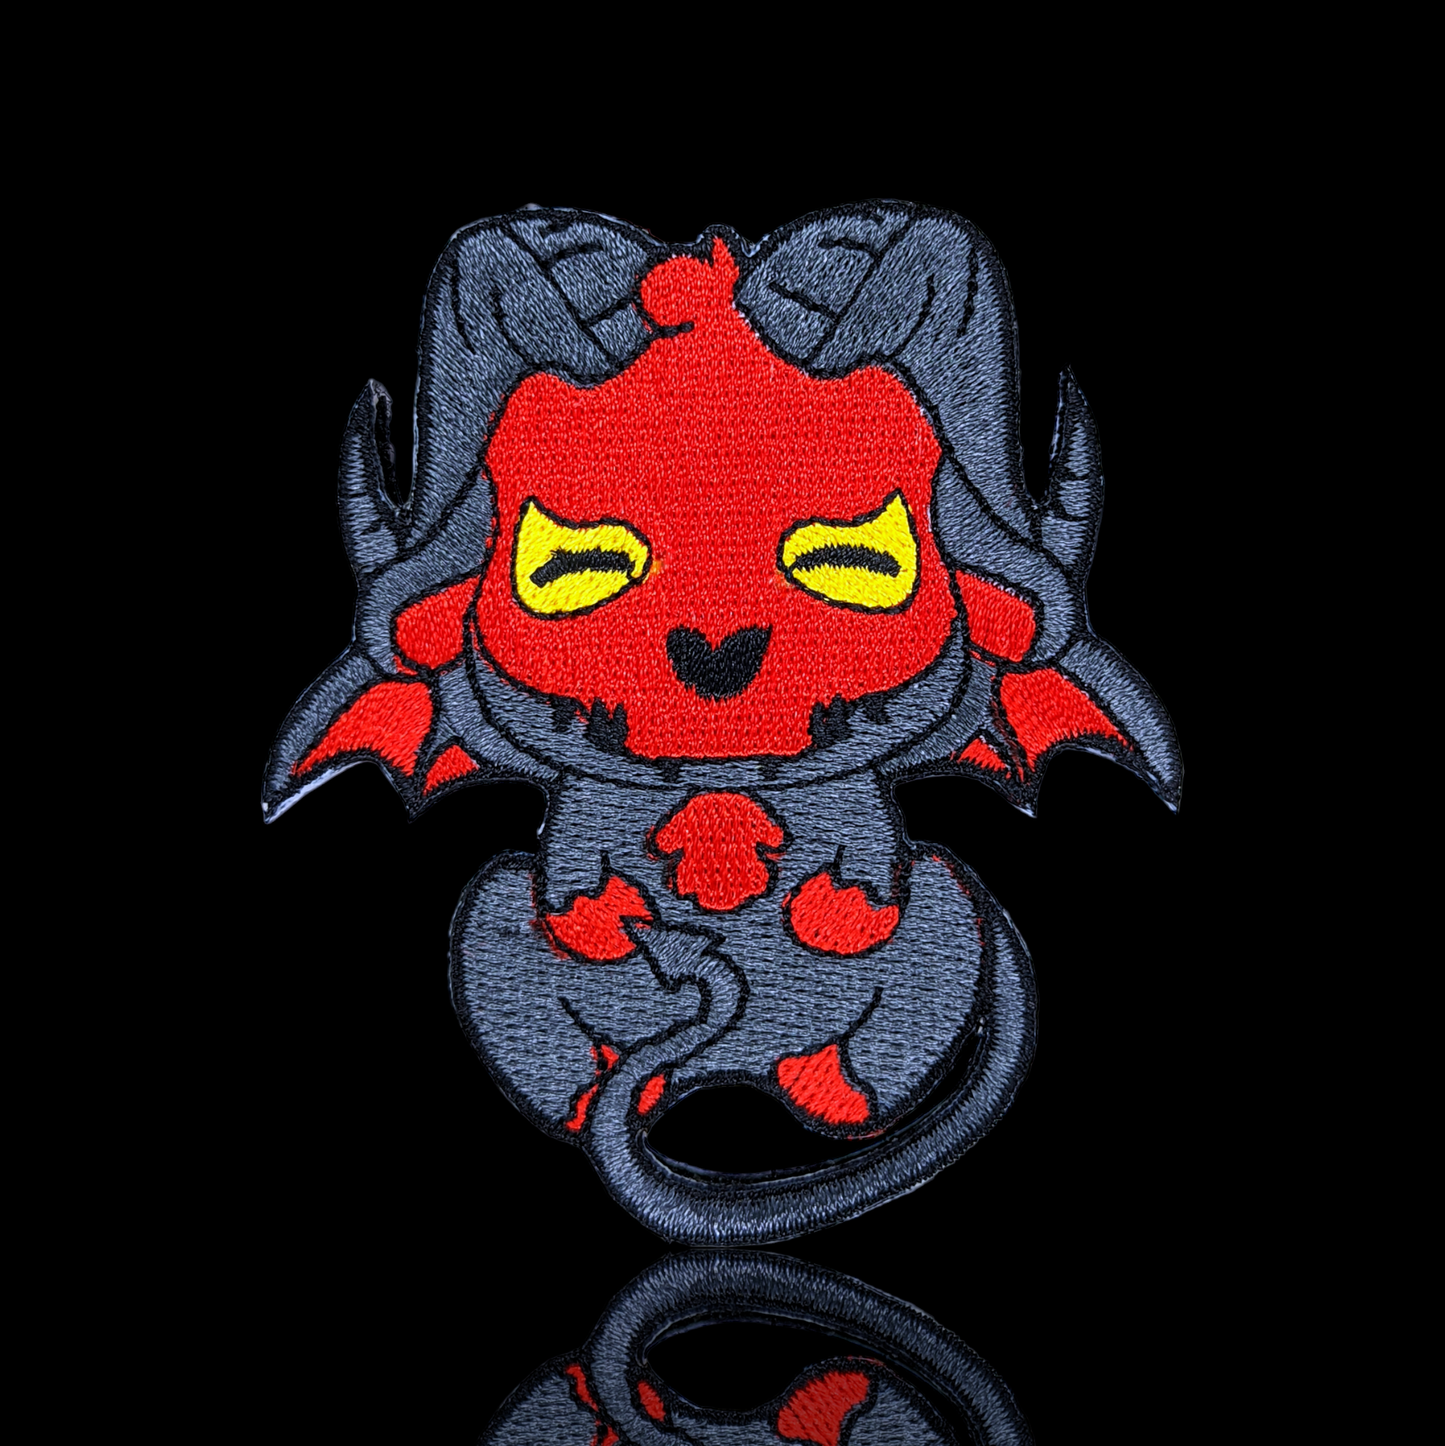 Jersey devil patch